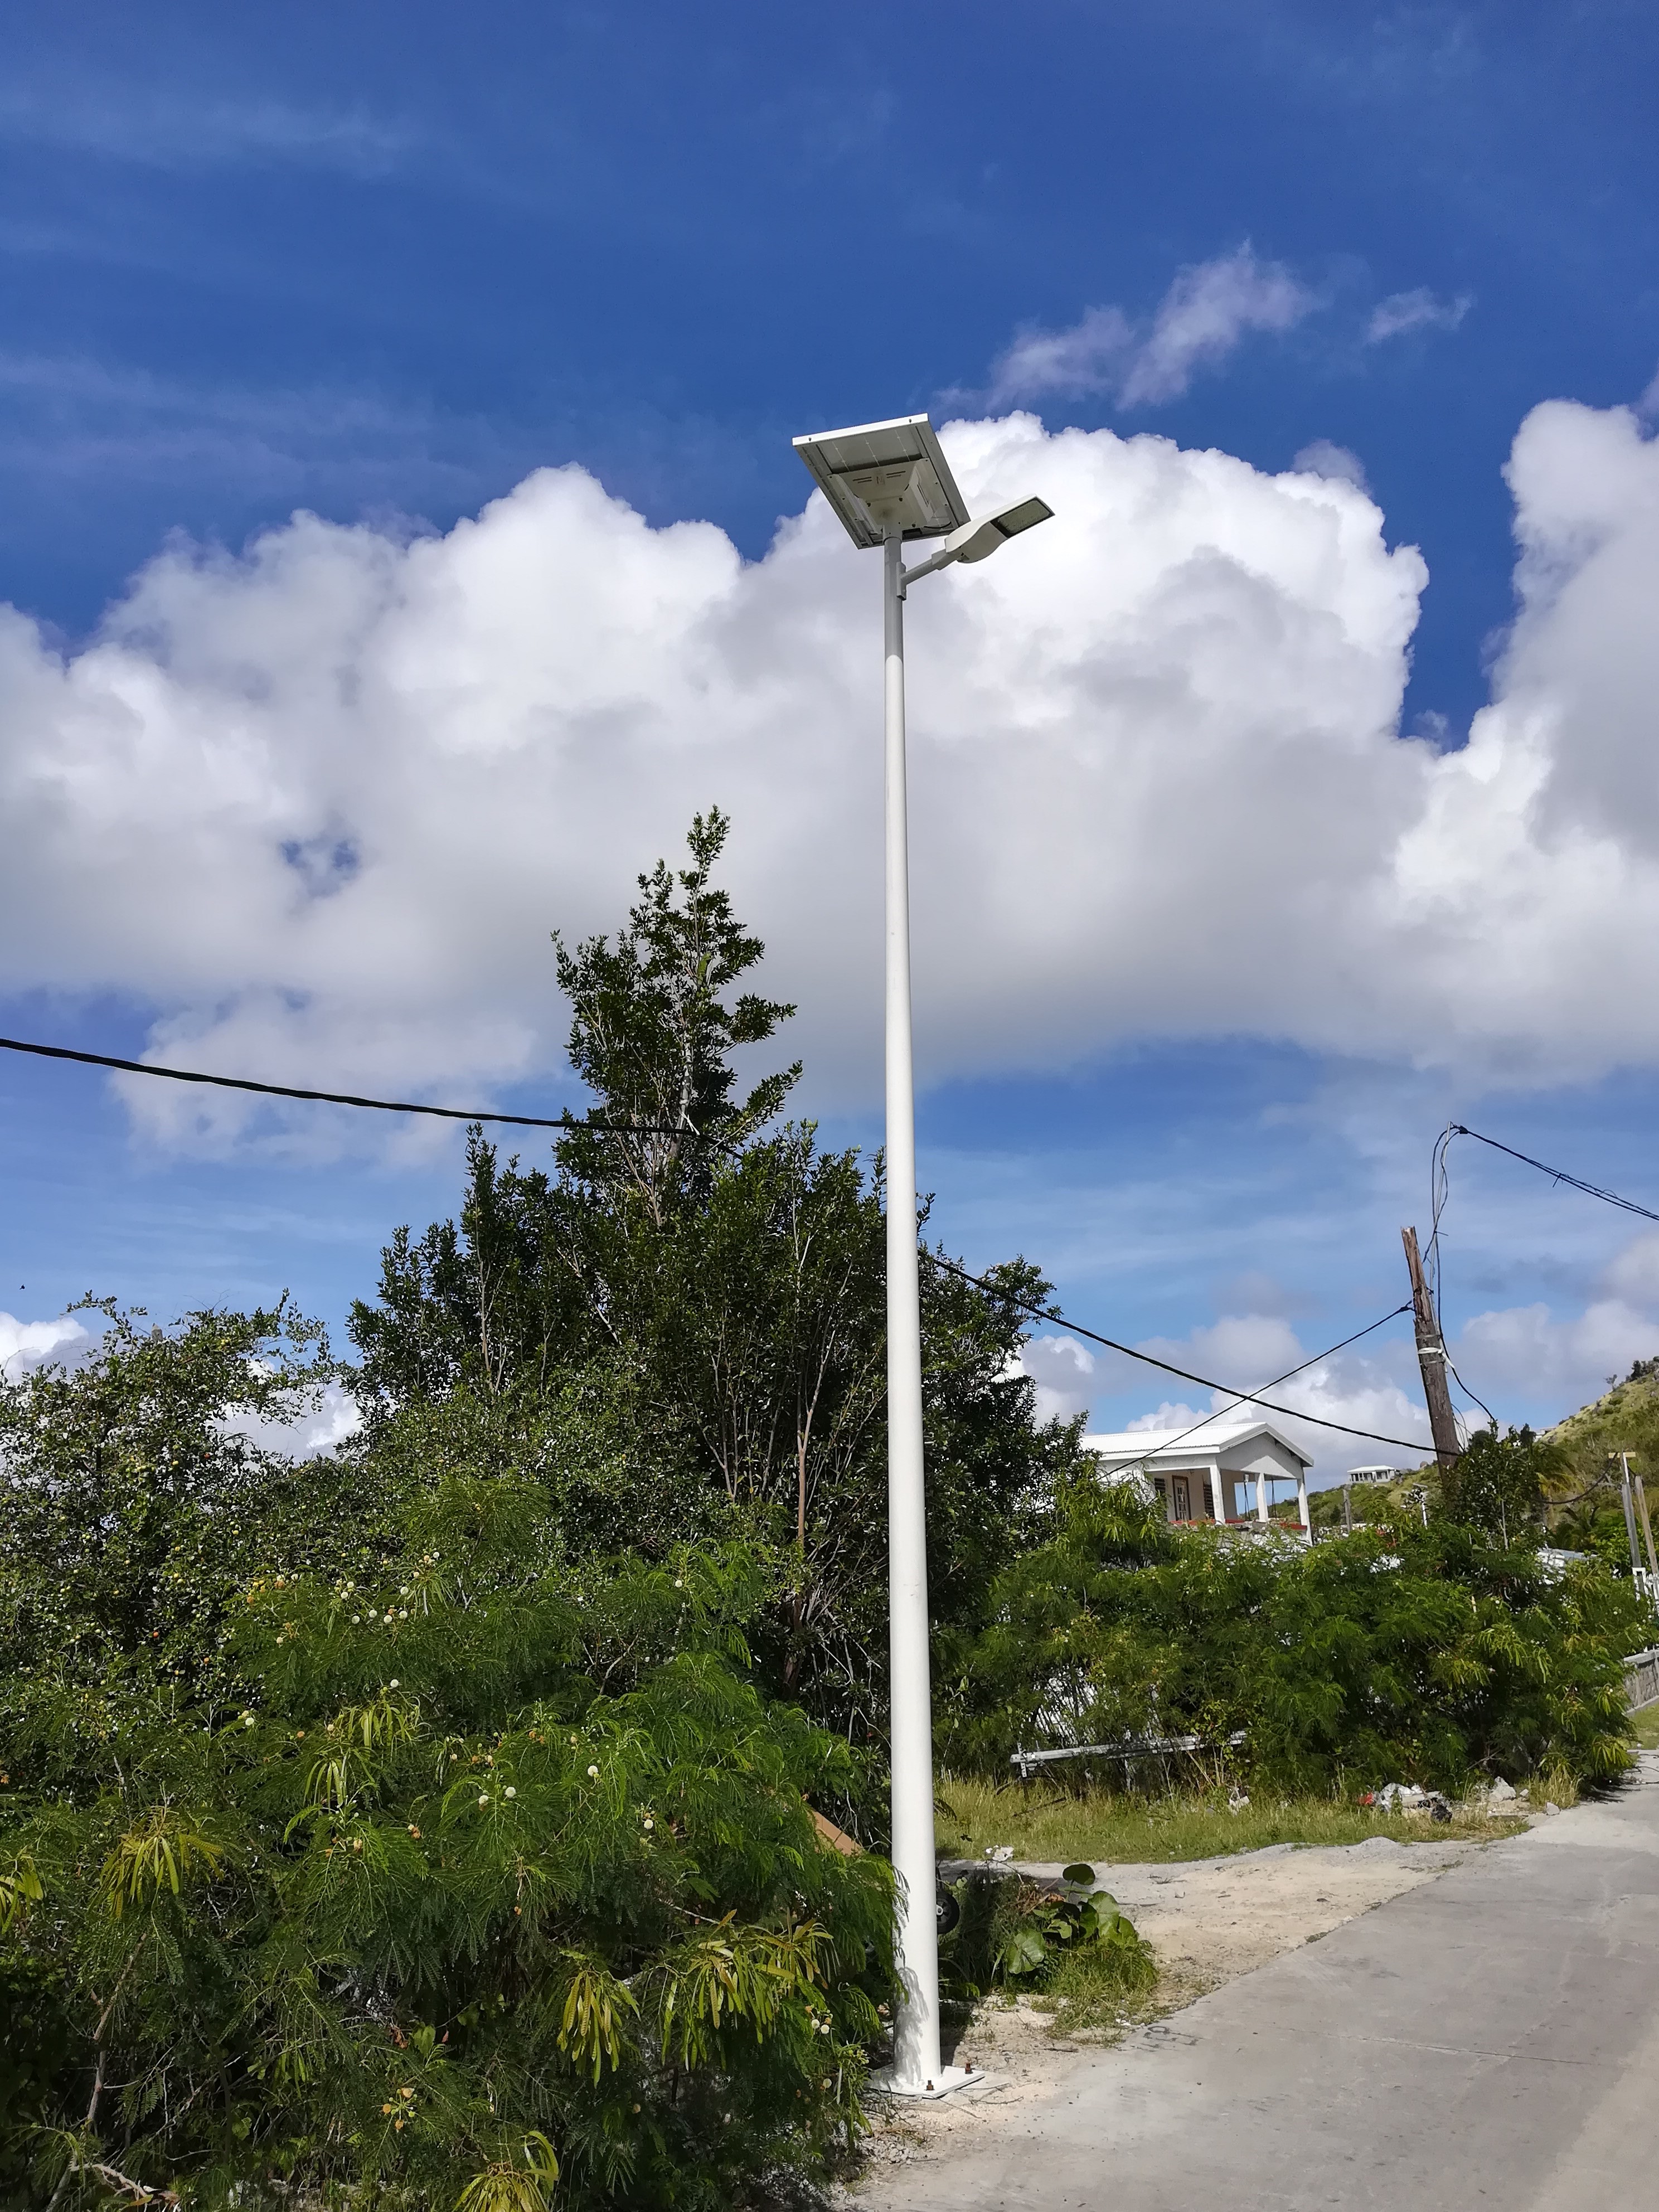 Installer des lampes solaires et éclairer les villages – Vie Sans Frontières